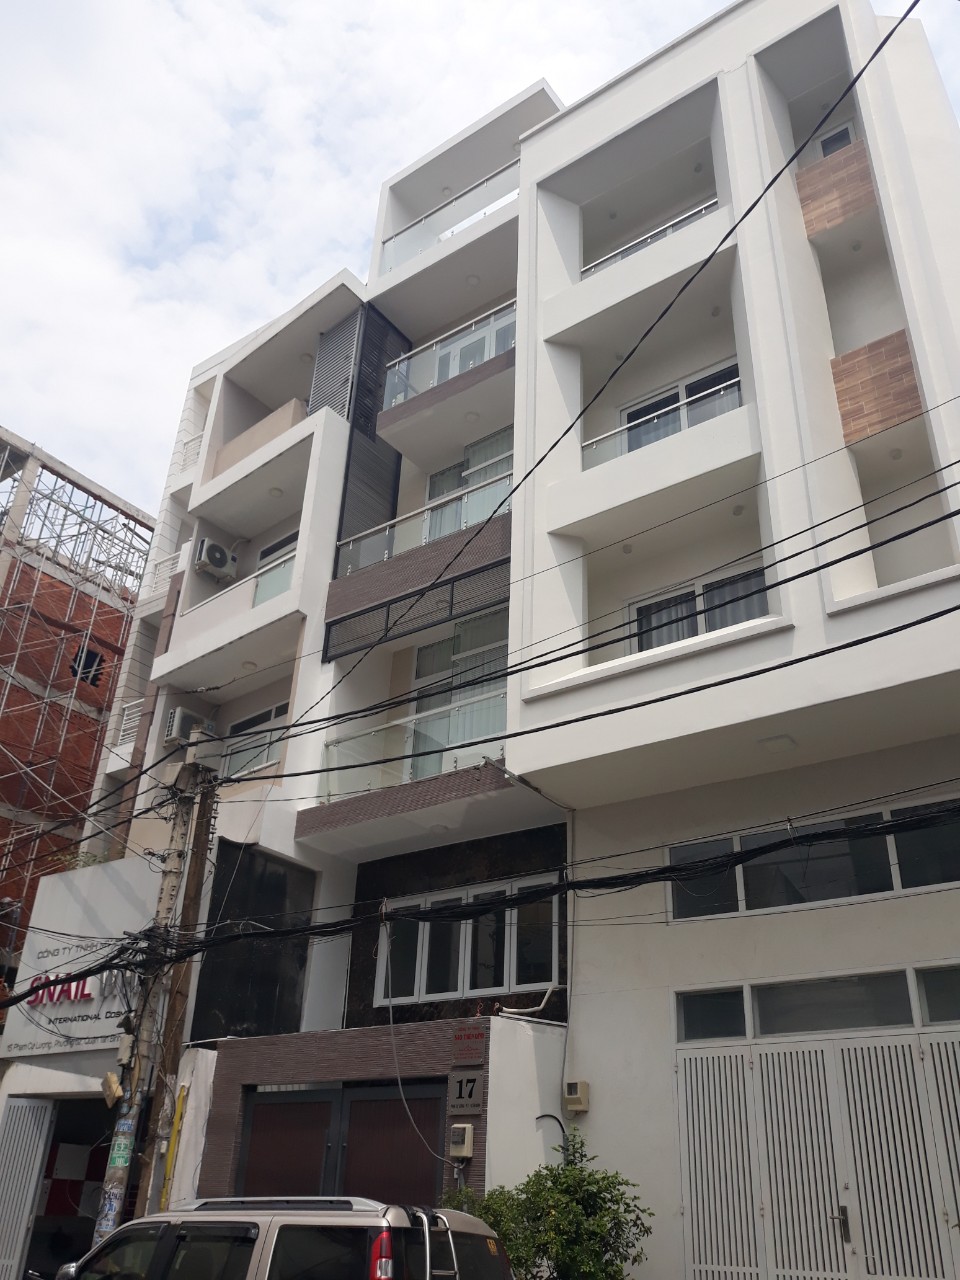 Định cư bán nhà 3 tầng Lê Quang Định, P1, hẻm xe hơi 5m, 6.3Ty 0909 174 916